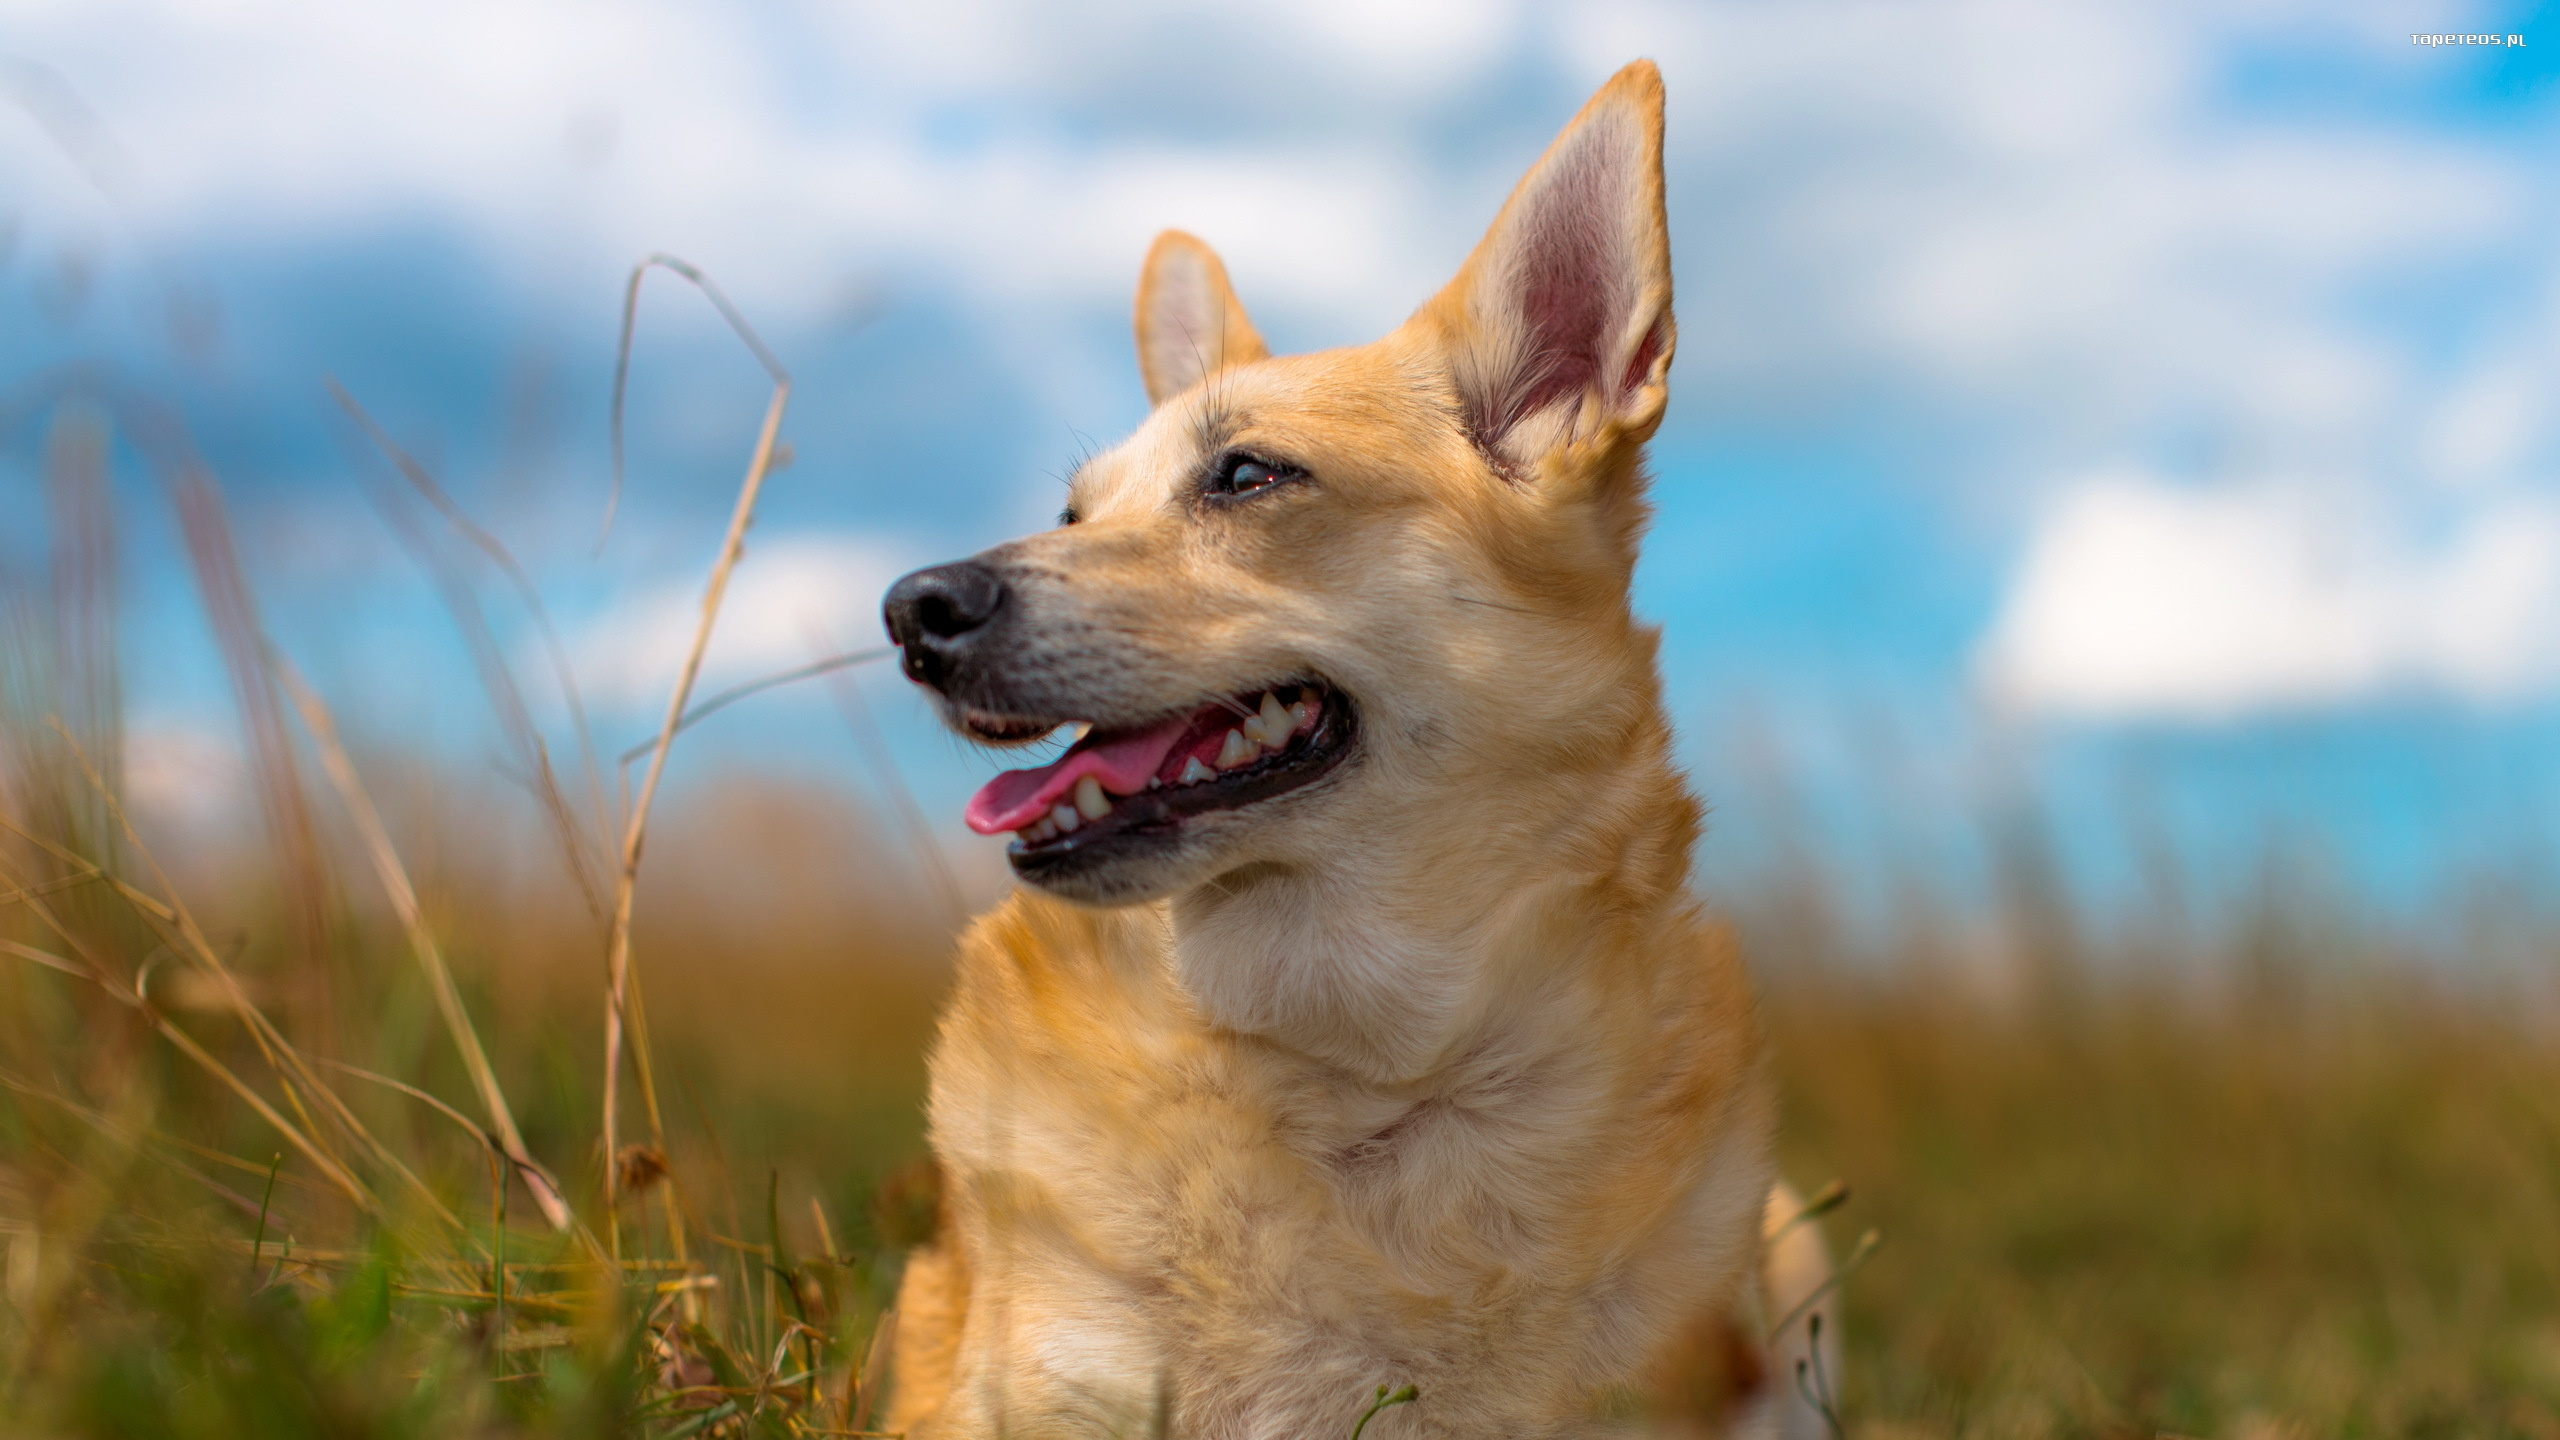 小狗, 品种的狗, 腊肠, 草, 狗喜欢哺乳动物 壁纸 2560x1440 允许